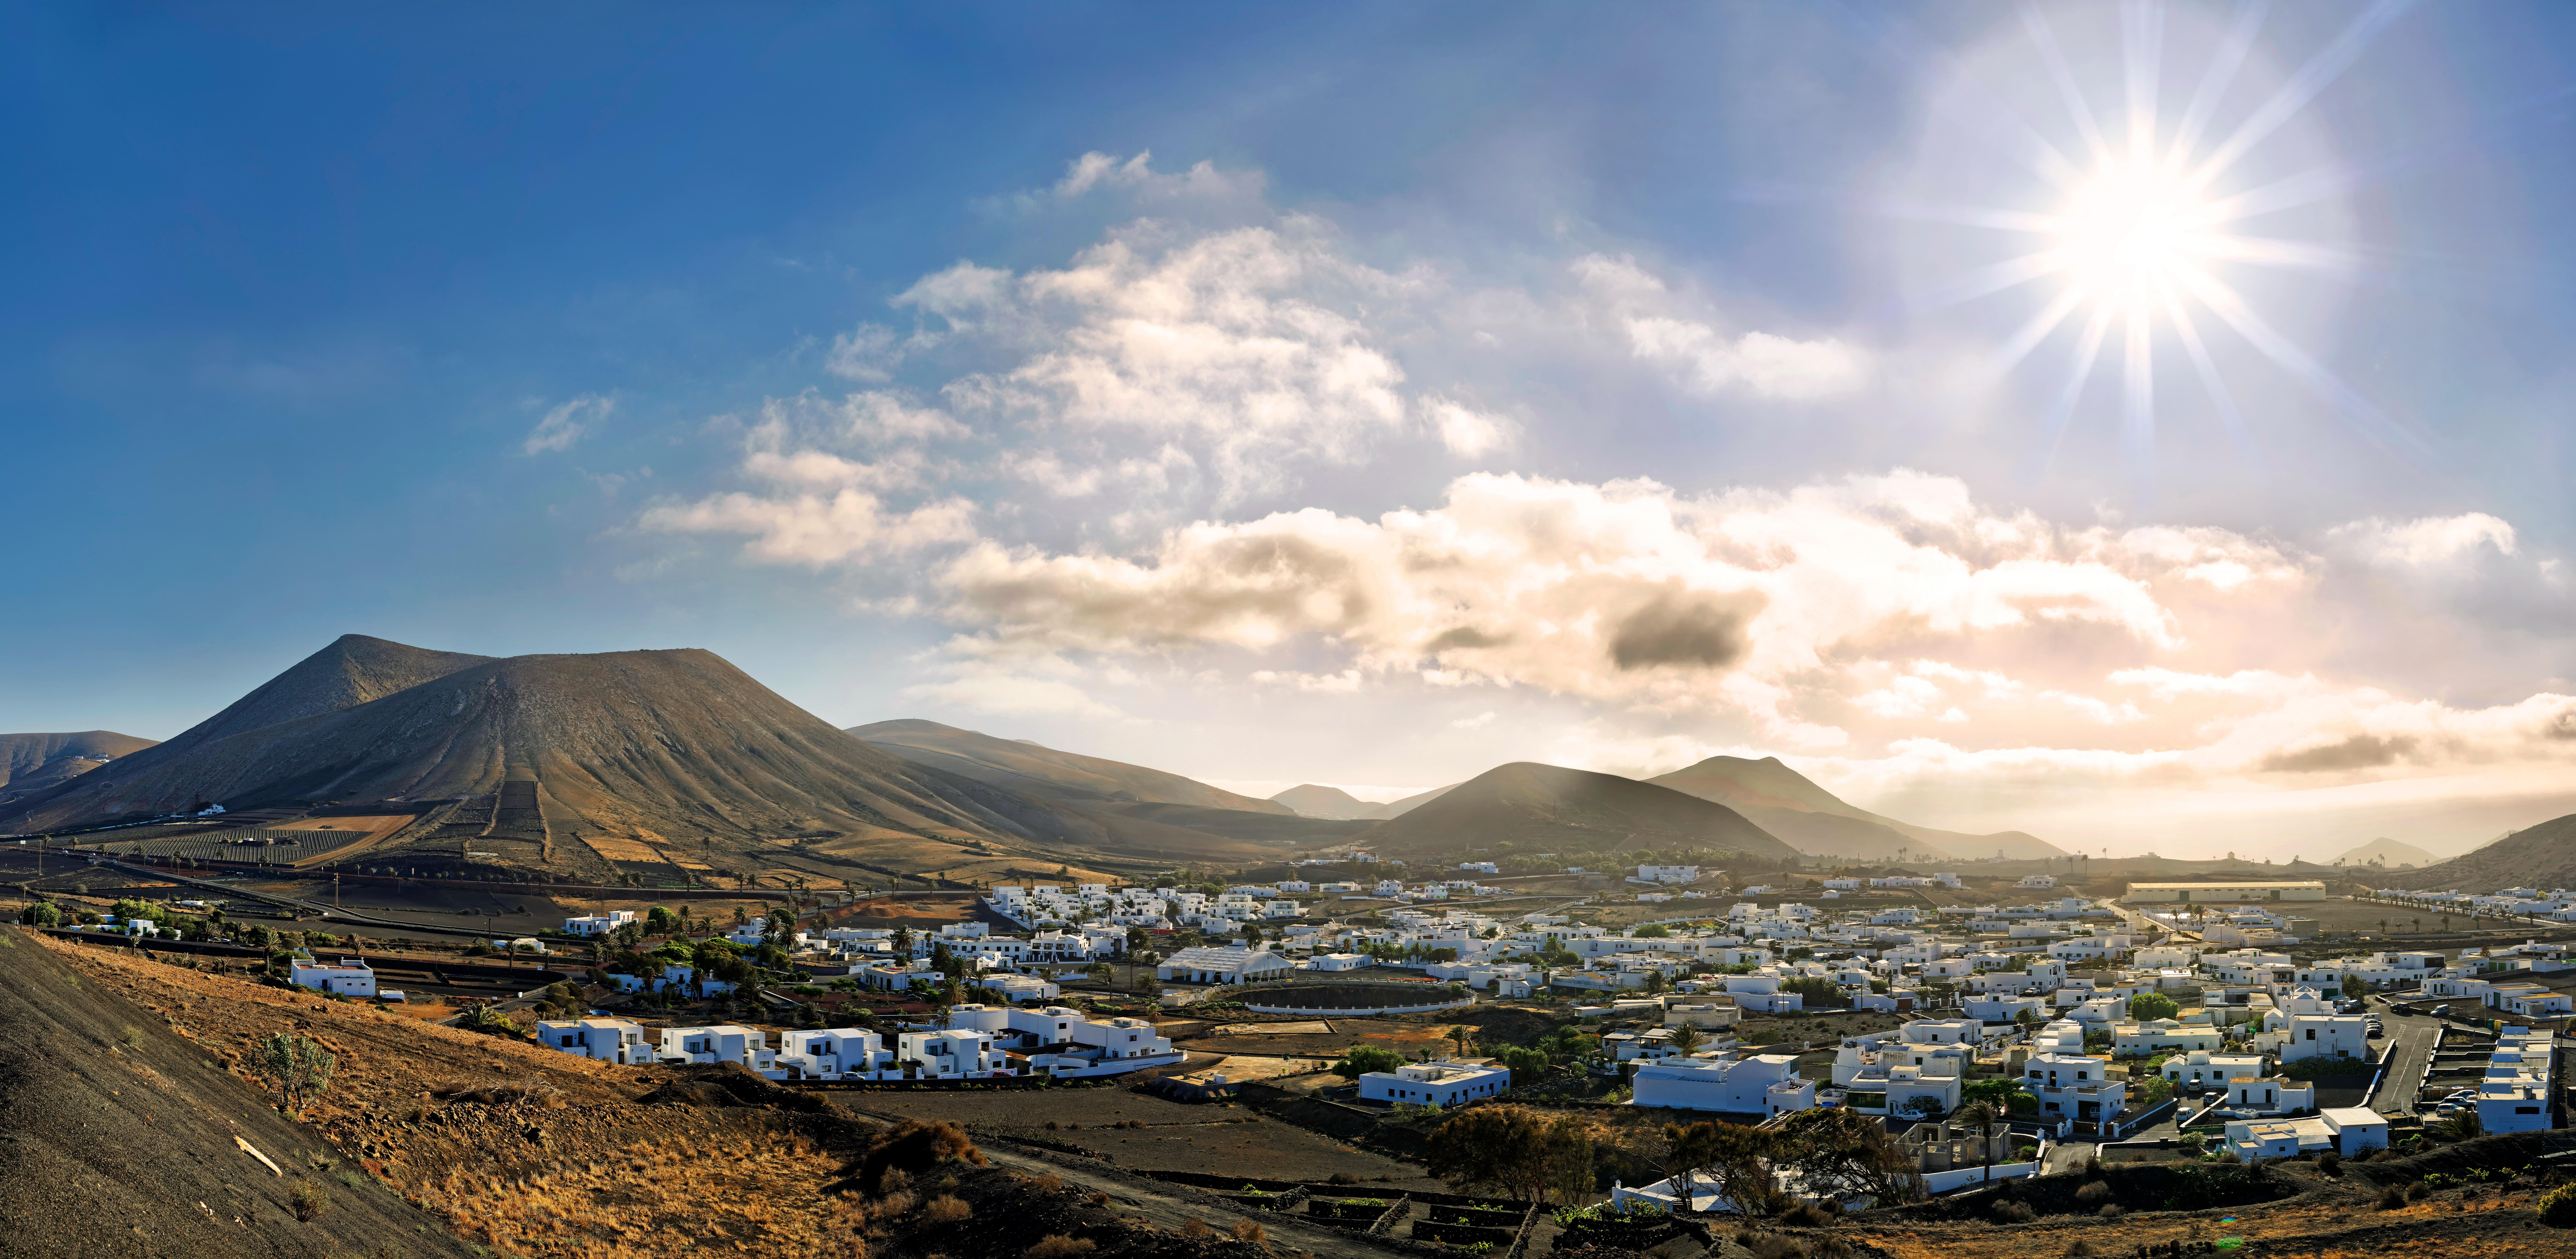 El pueblo de Canarias que pocos conocen y enamora por su belleza